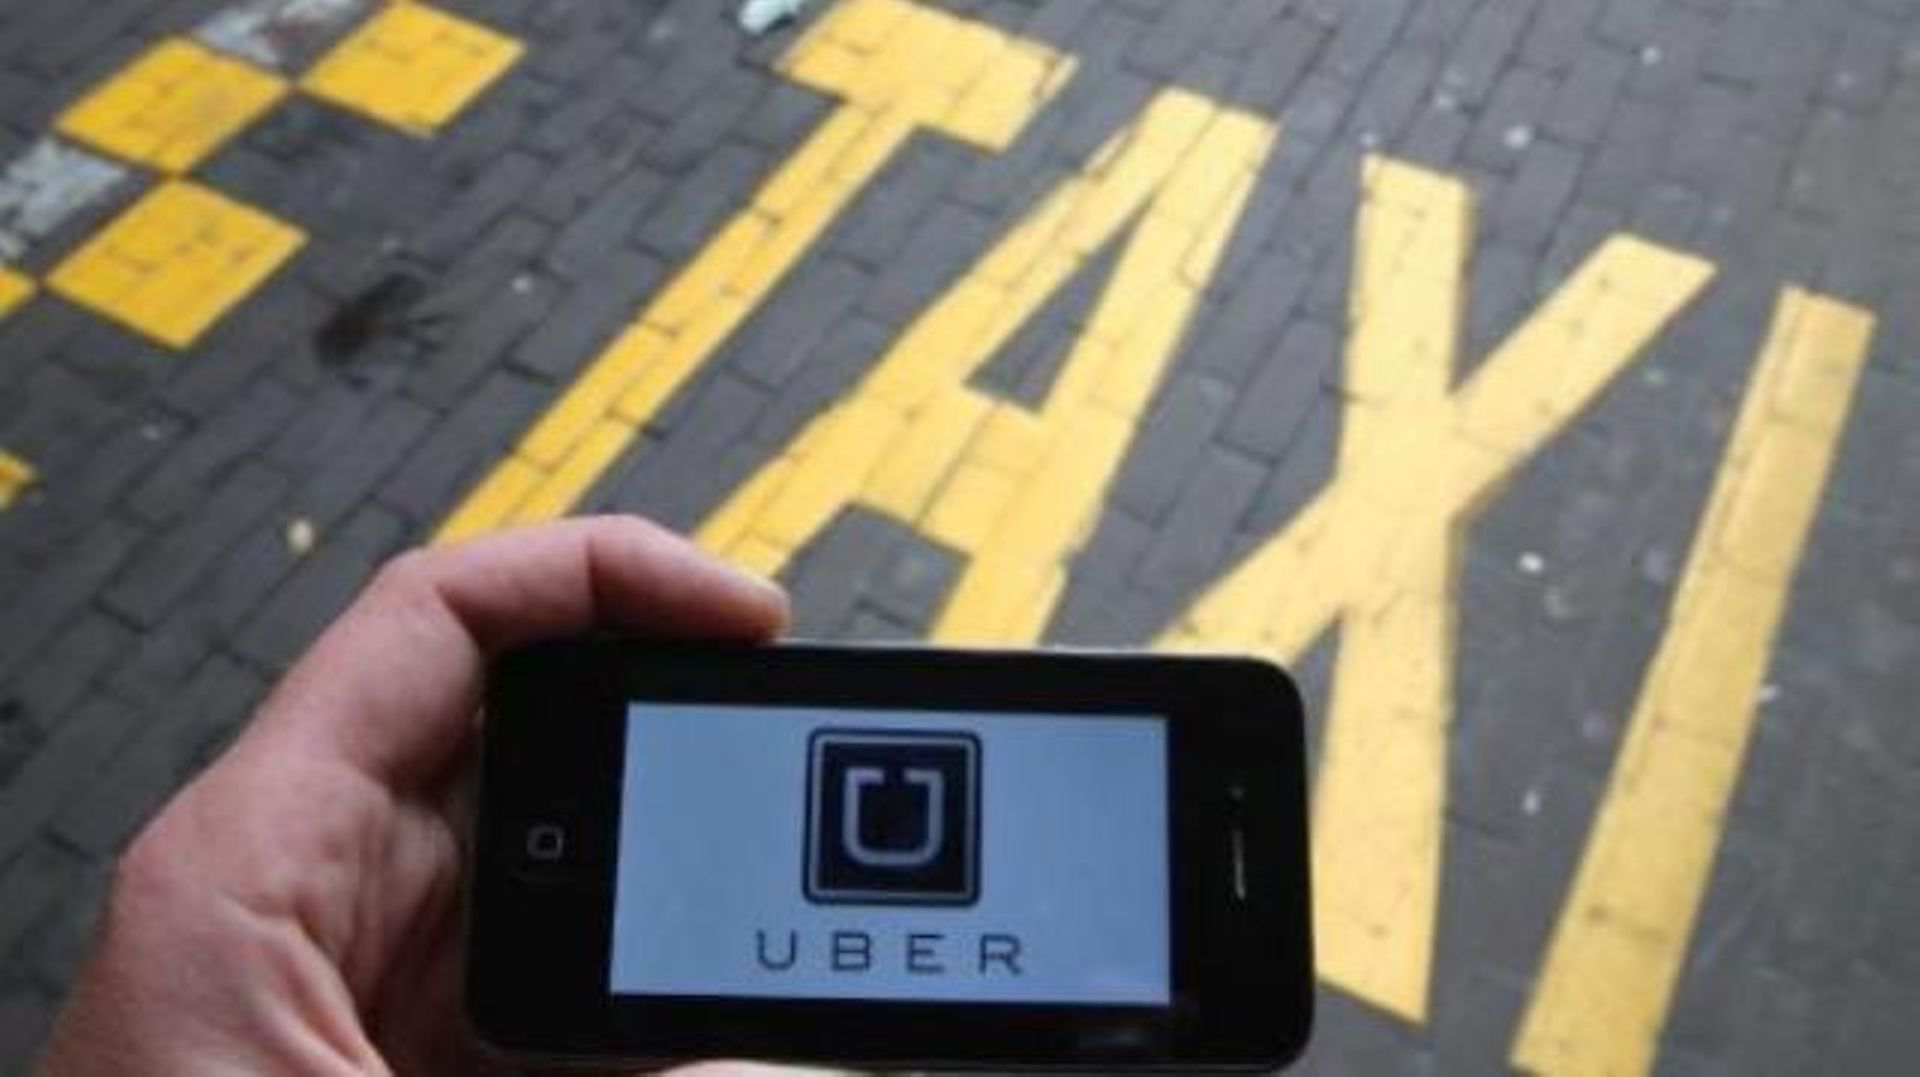 Uber jugé illégal risque une astreinte de 10.000 euros par infraction